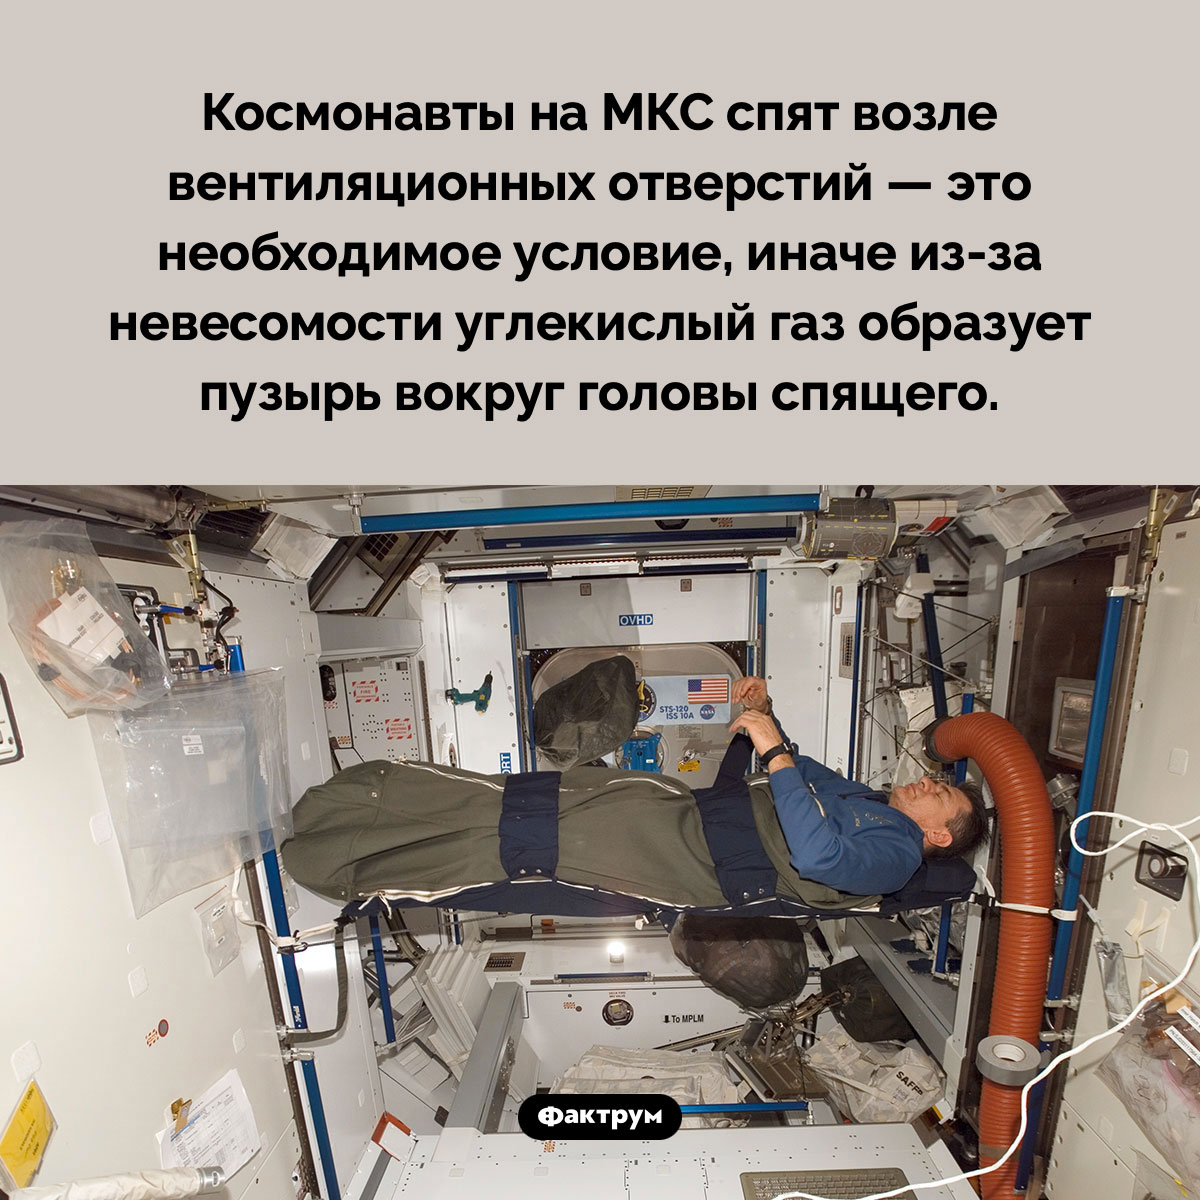 Почему космонавты спят возле вентиляции. Космонавты на МКС спят возле вентиляционных отверстий — это необходимое условие, иначе из-за невесомости углекислый газ образует пузырь вокруг головы спящего.